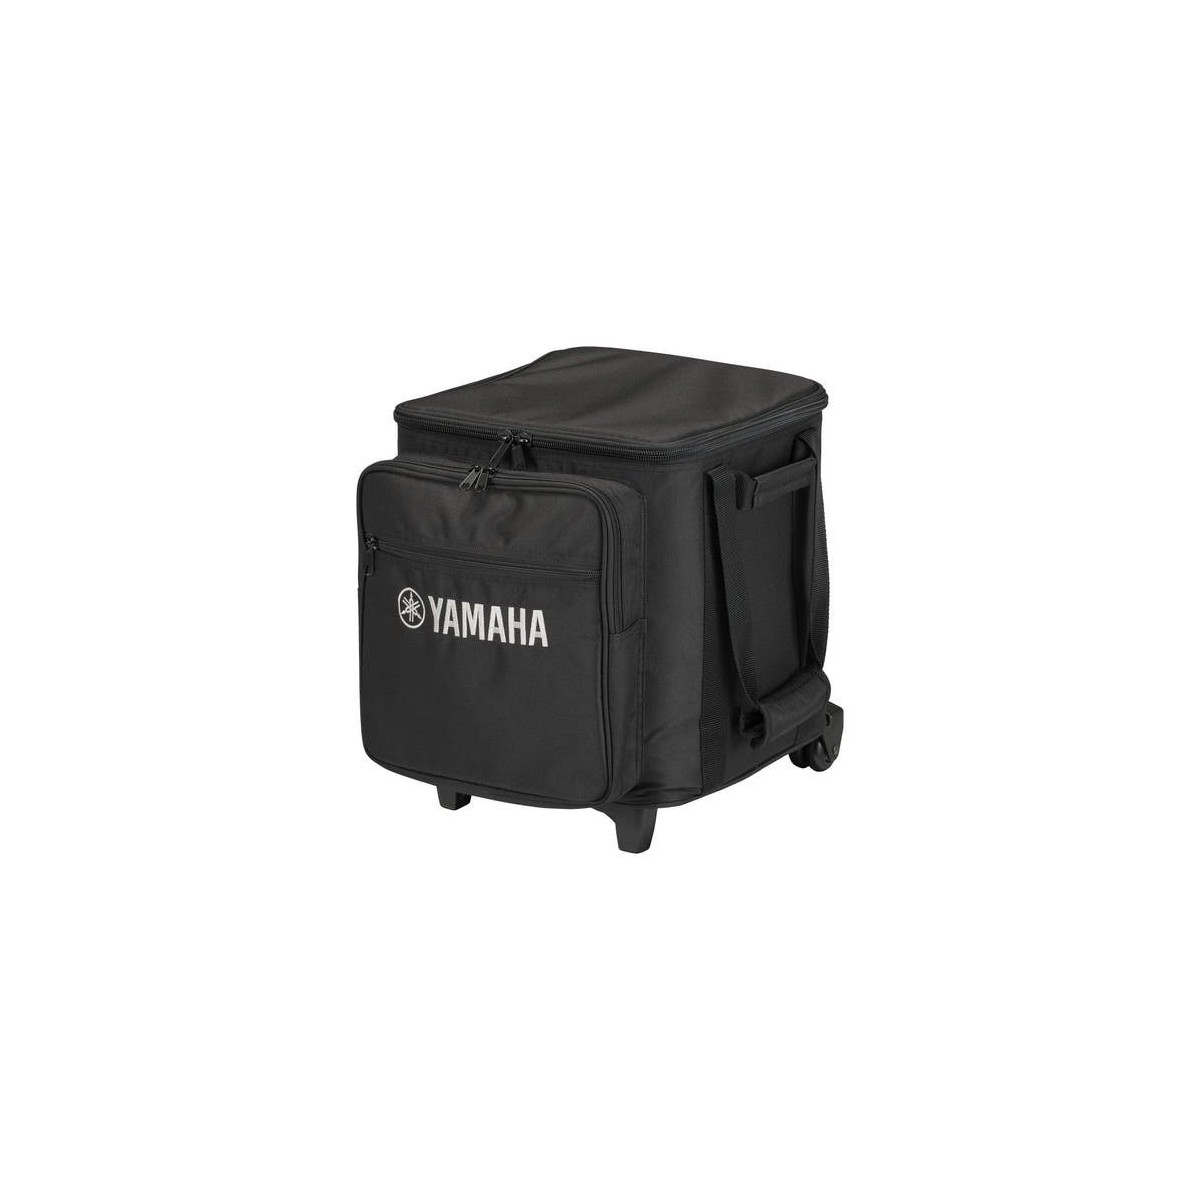 Yamaha CASE STP 200 - Tragetasche passend für STAGEPAS - in schwarz - Speaker